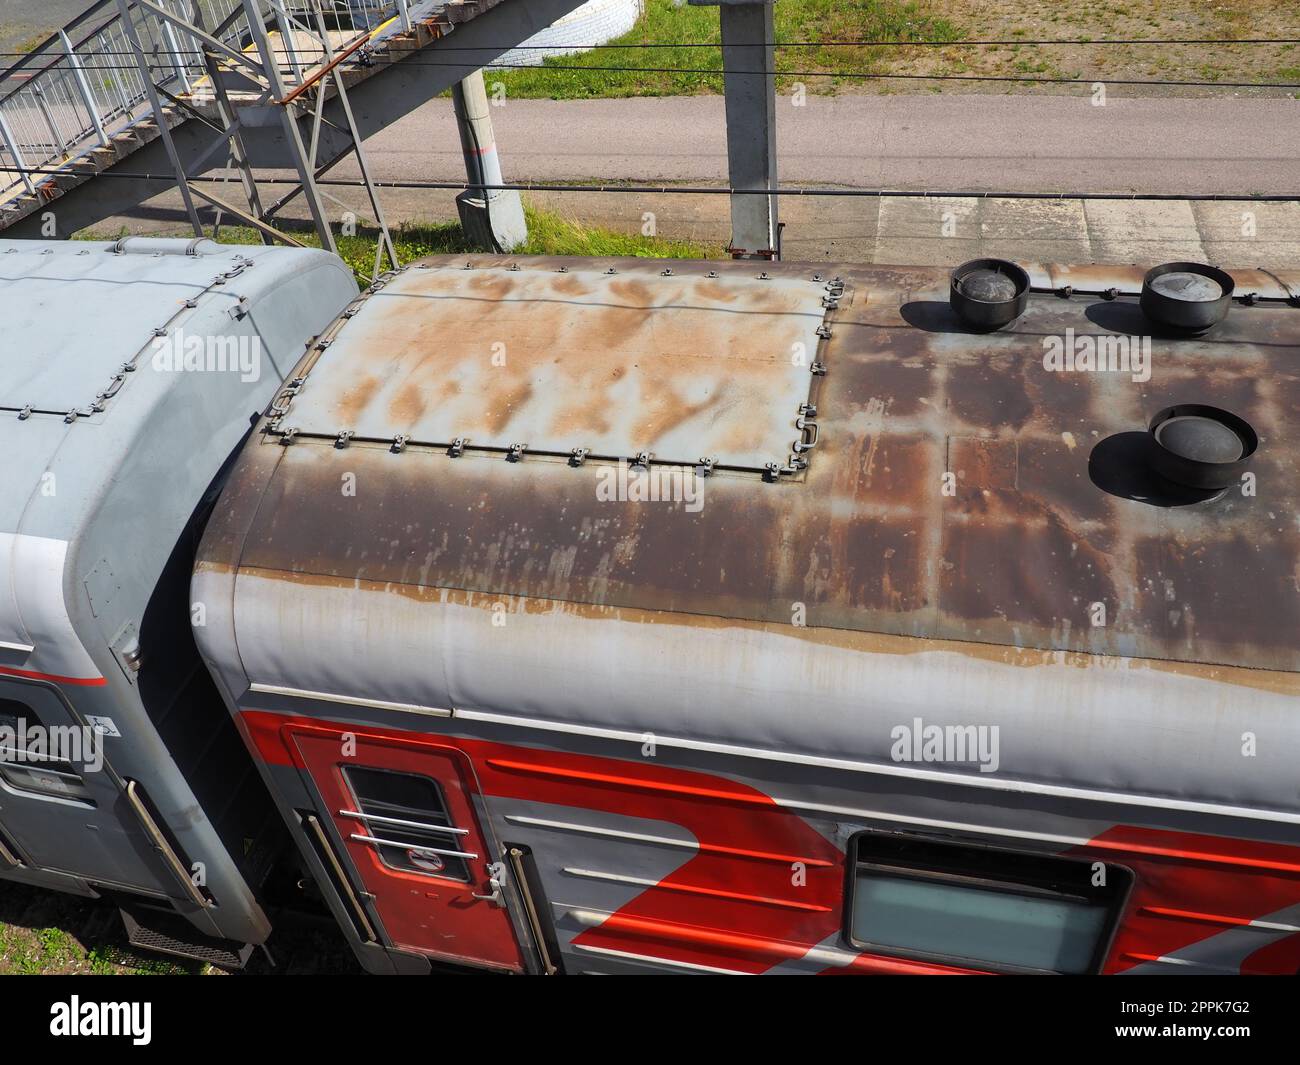 Svir, Rusia 6 de agosto de 2021 Vista superior del tren de los ferrocarriles rusos. Un viejo carro gris y un techo oxidado con tubos de ventilación. Autoacoplamiento de turismos. Transporte de personas en rutas interurbanas Foto de stock